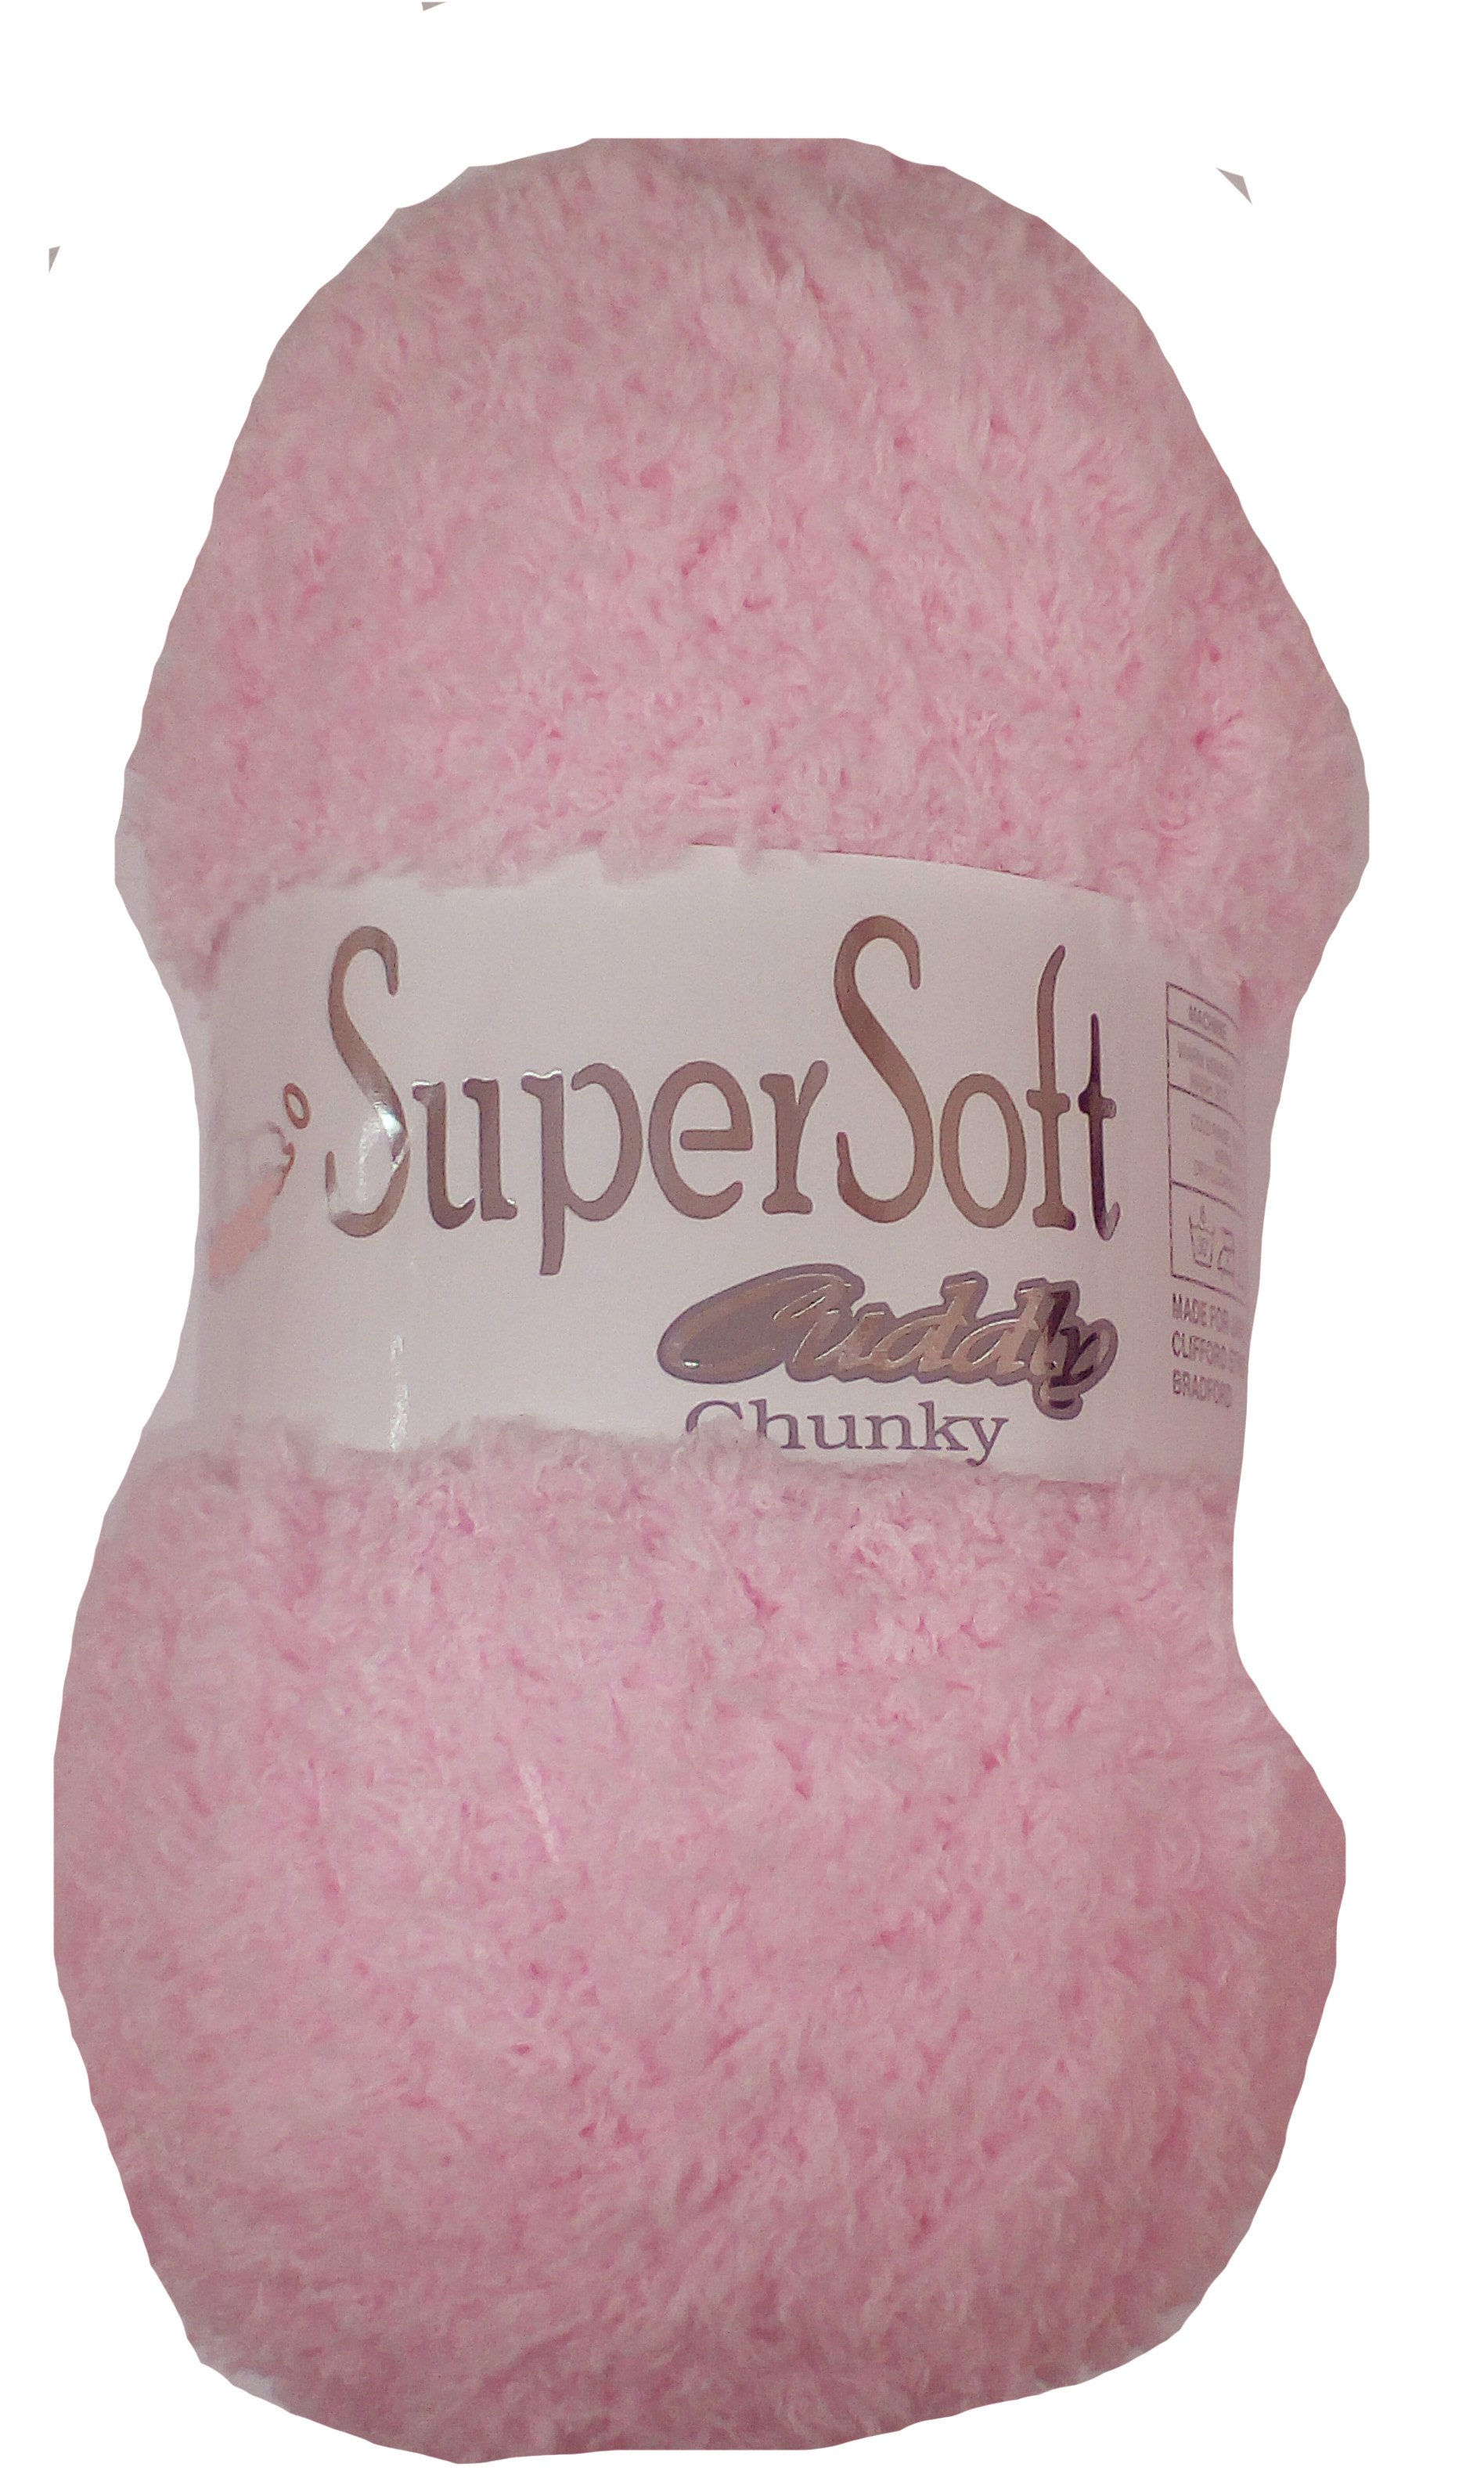 Super Soft Cuddly Yarn Pink